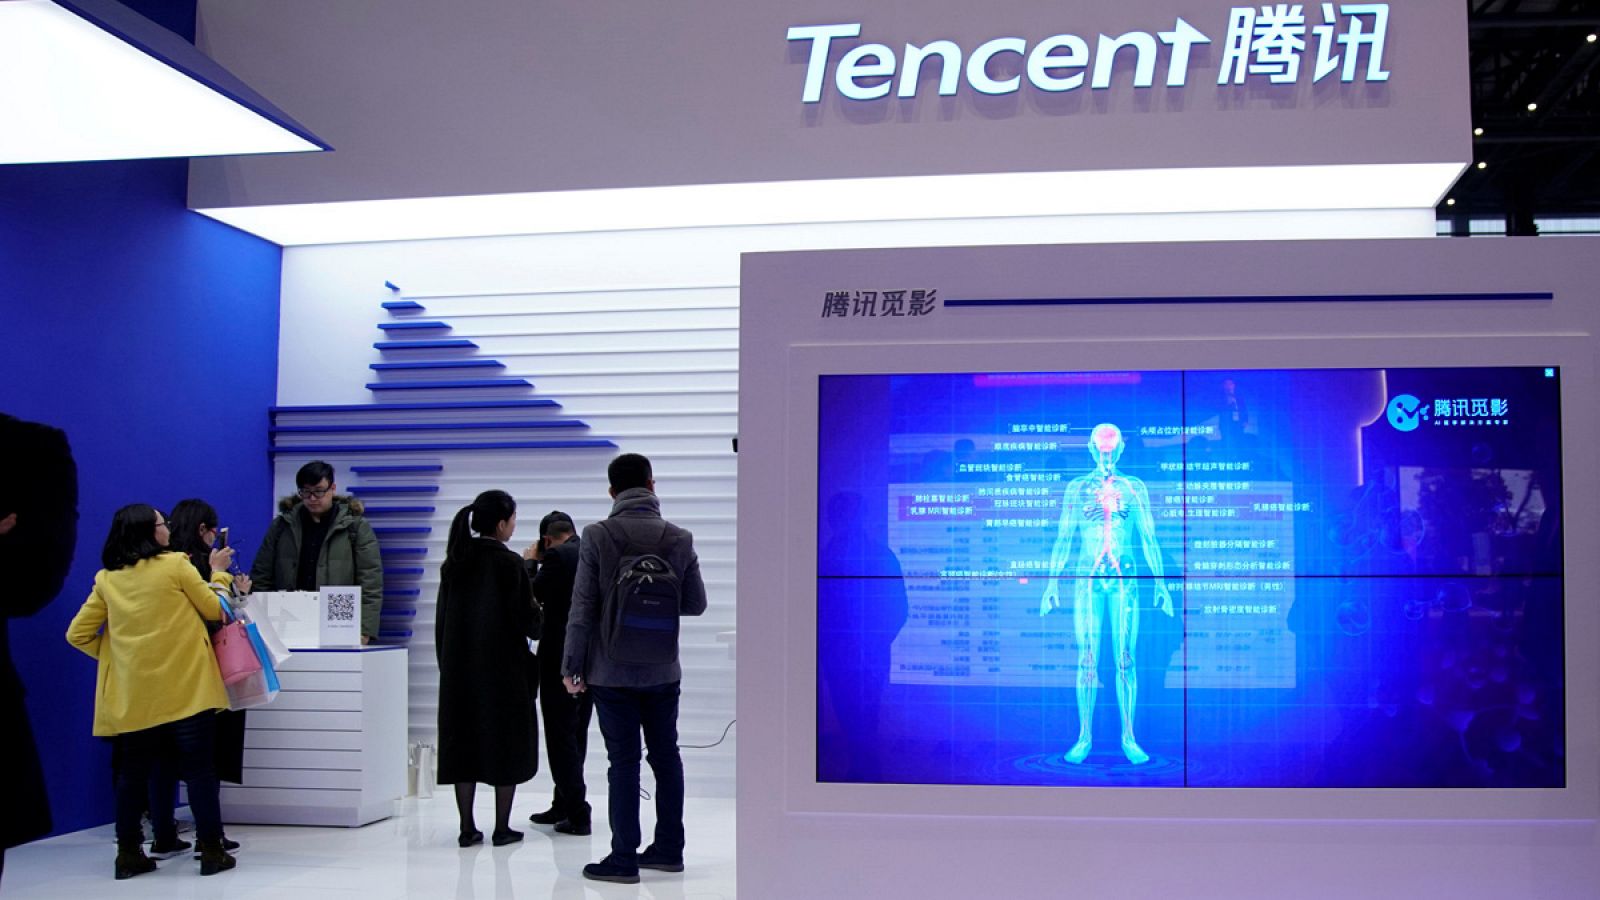 El stand de Tencent en la cuarta edición de la Conferencia Mundial sobre Internet que tiene lugar en Wuzhen, China